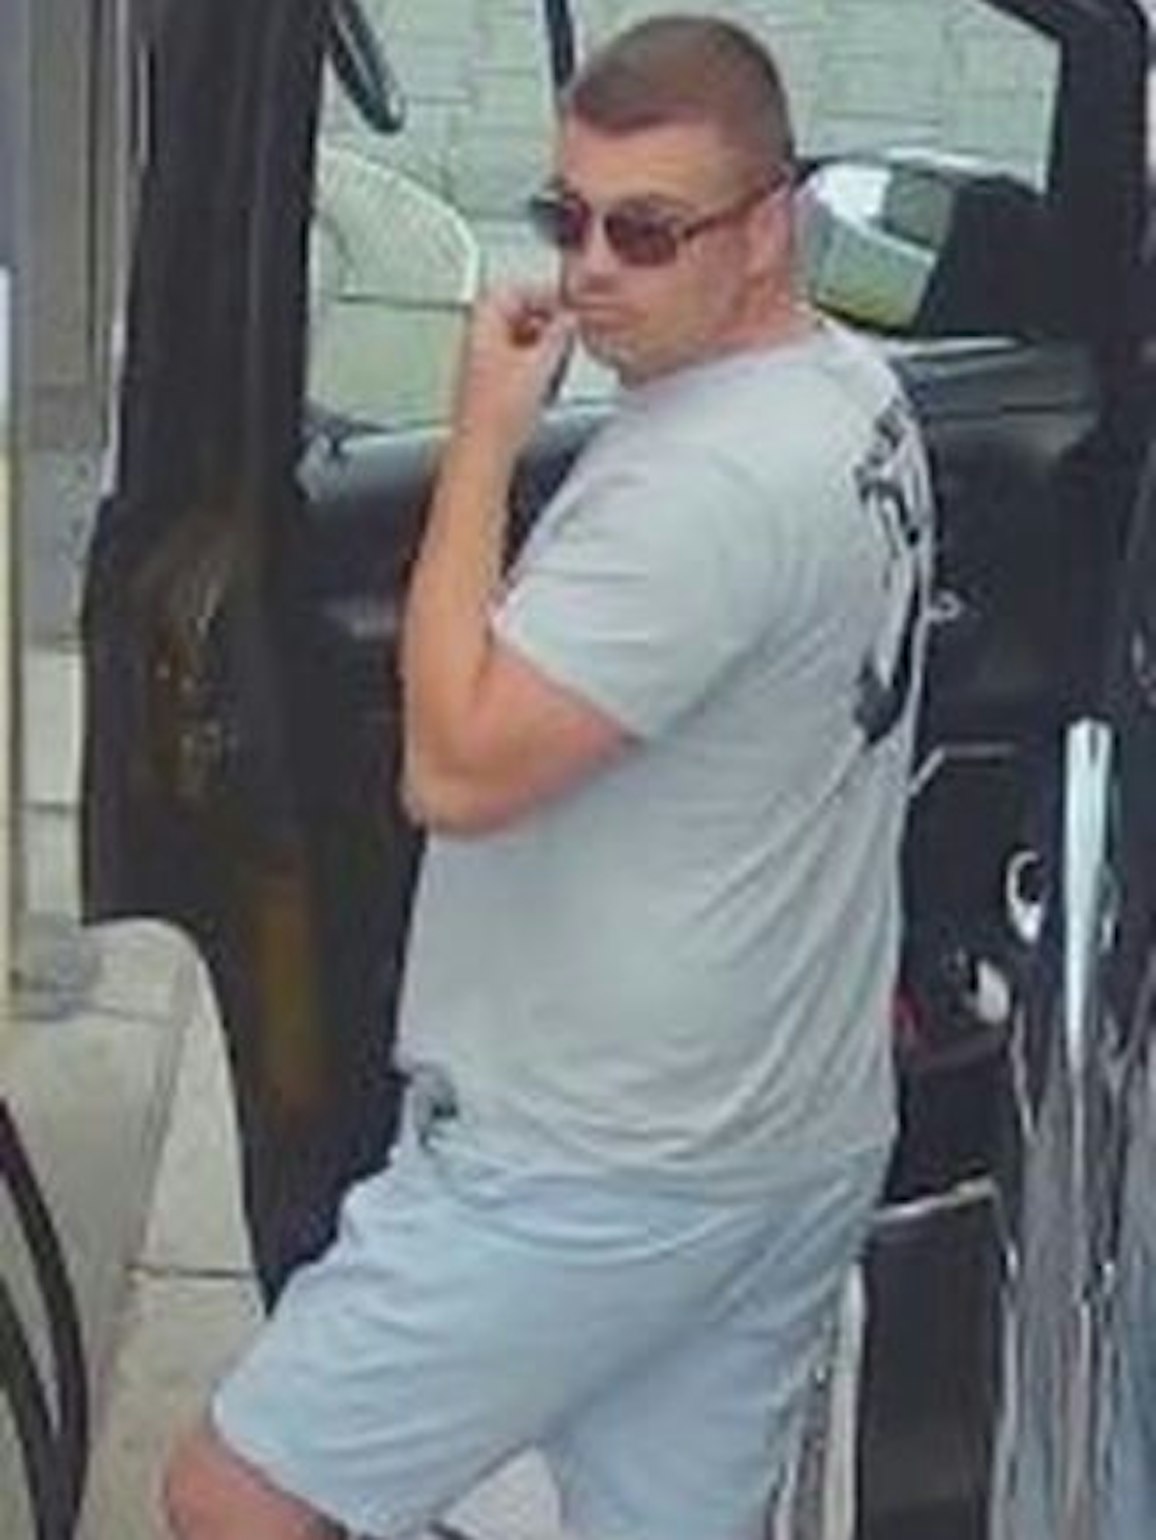 Ein dicklicher Mann in kurzer, hellblauer Hose und grauem T-Shirt steht an einer geöffneten Autotür, er trägt kurz rasierte Haare und eine Sonnenbrille.